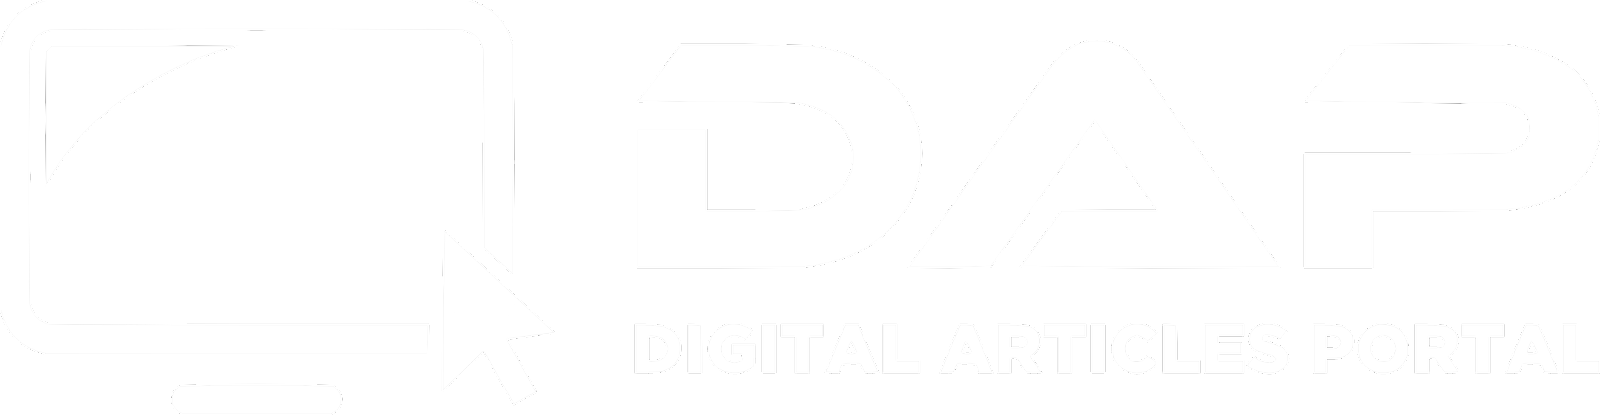 Digital Articles Portal (DAP)